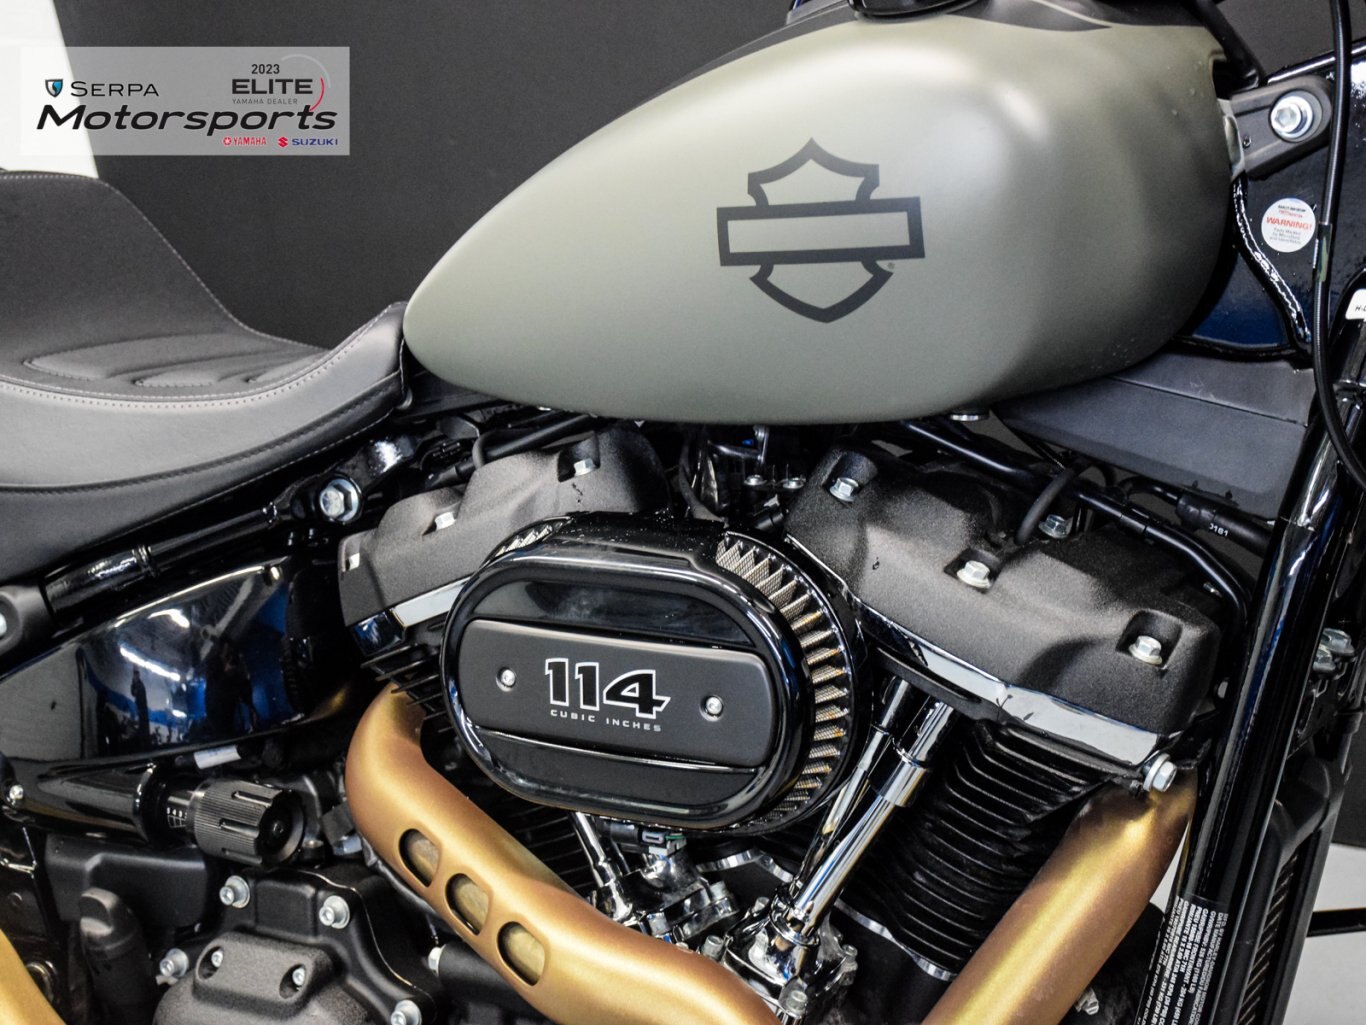 2021 Harley Davidson FXFBS Fat Bob 114